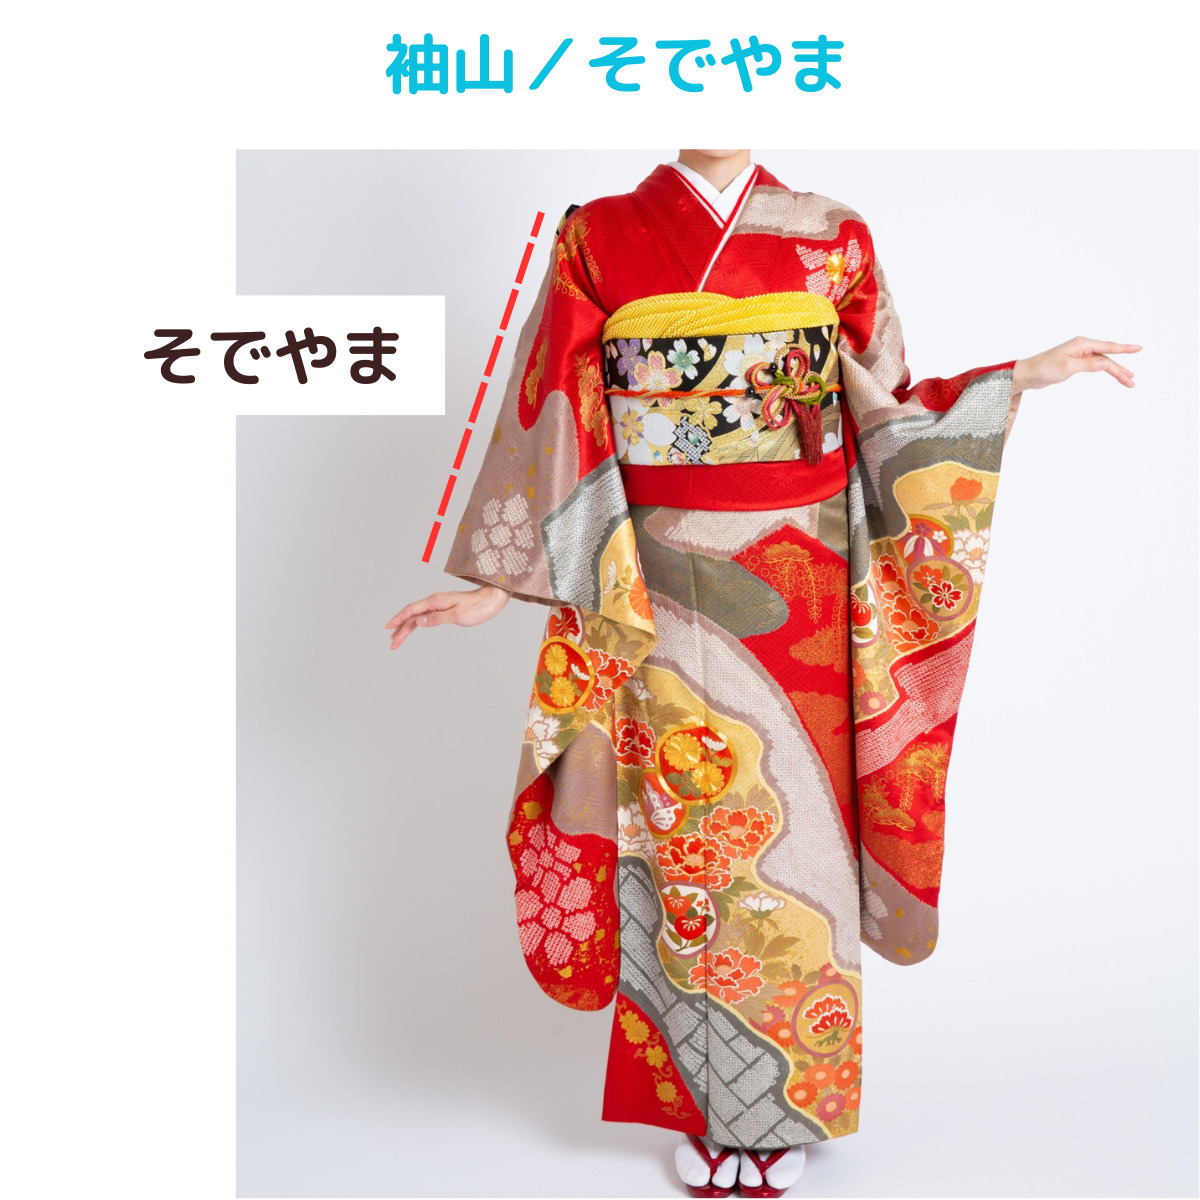 着物kimonoの名称、袖山／そでやまの説明画像、写真。